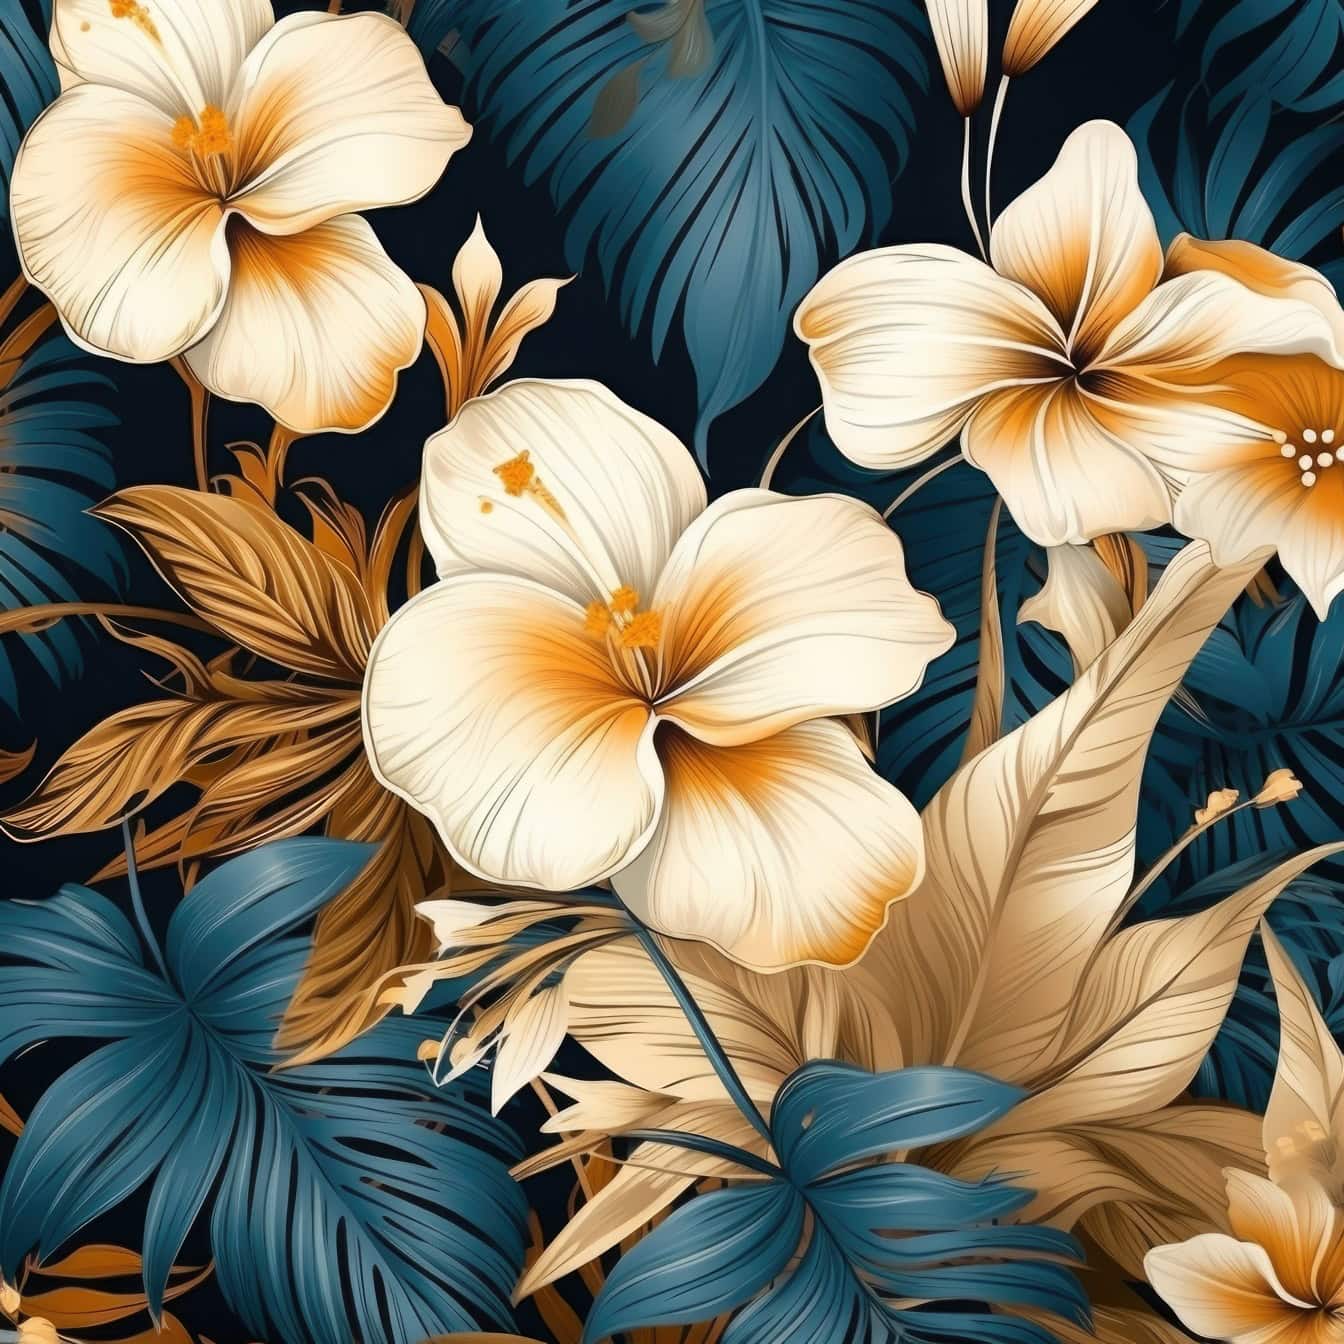 Kvetinový vzor zlatohnedých kvetov s tmavo modrastými listami v pozadí